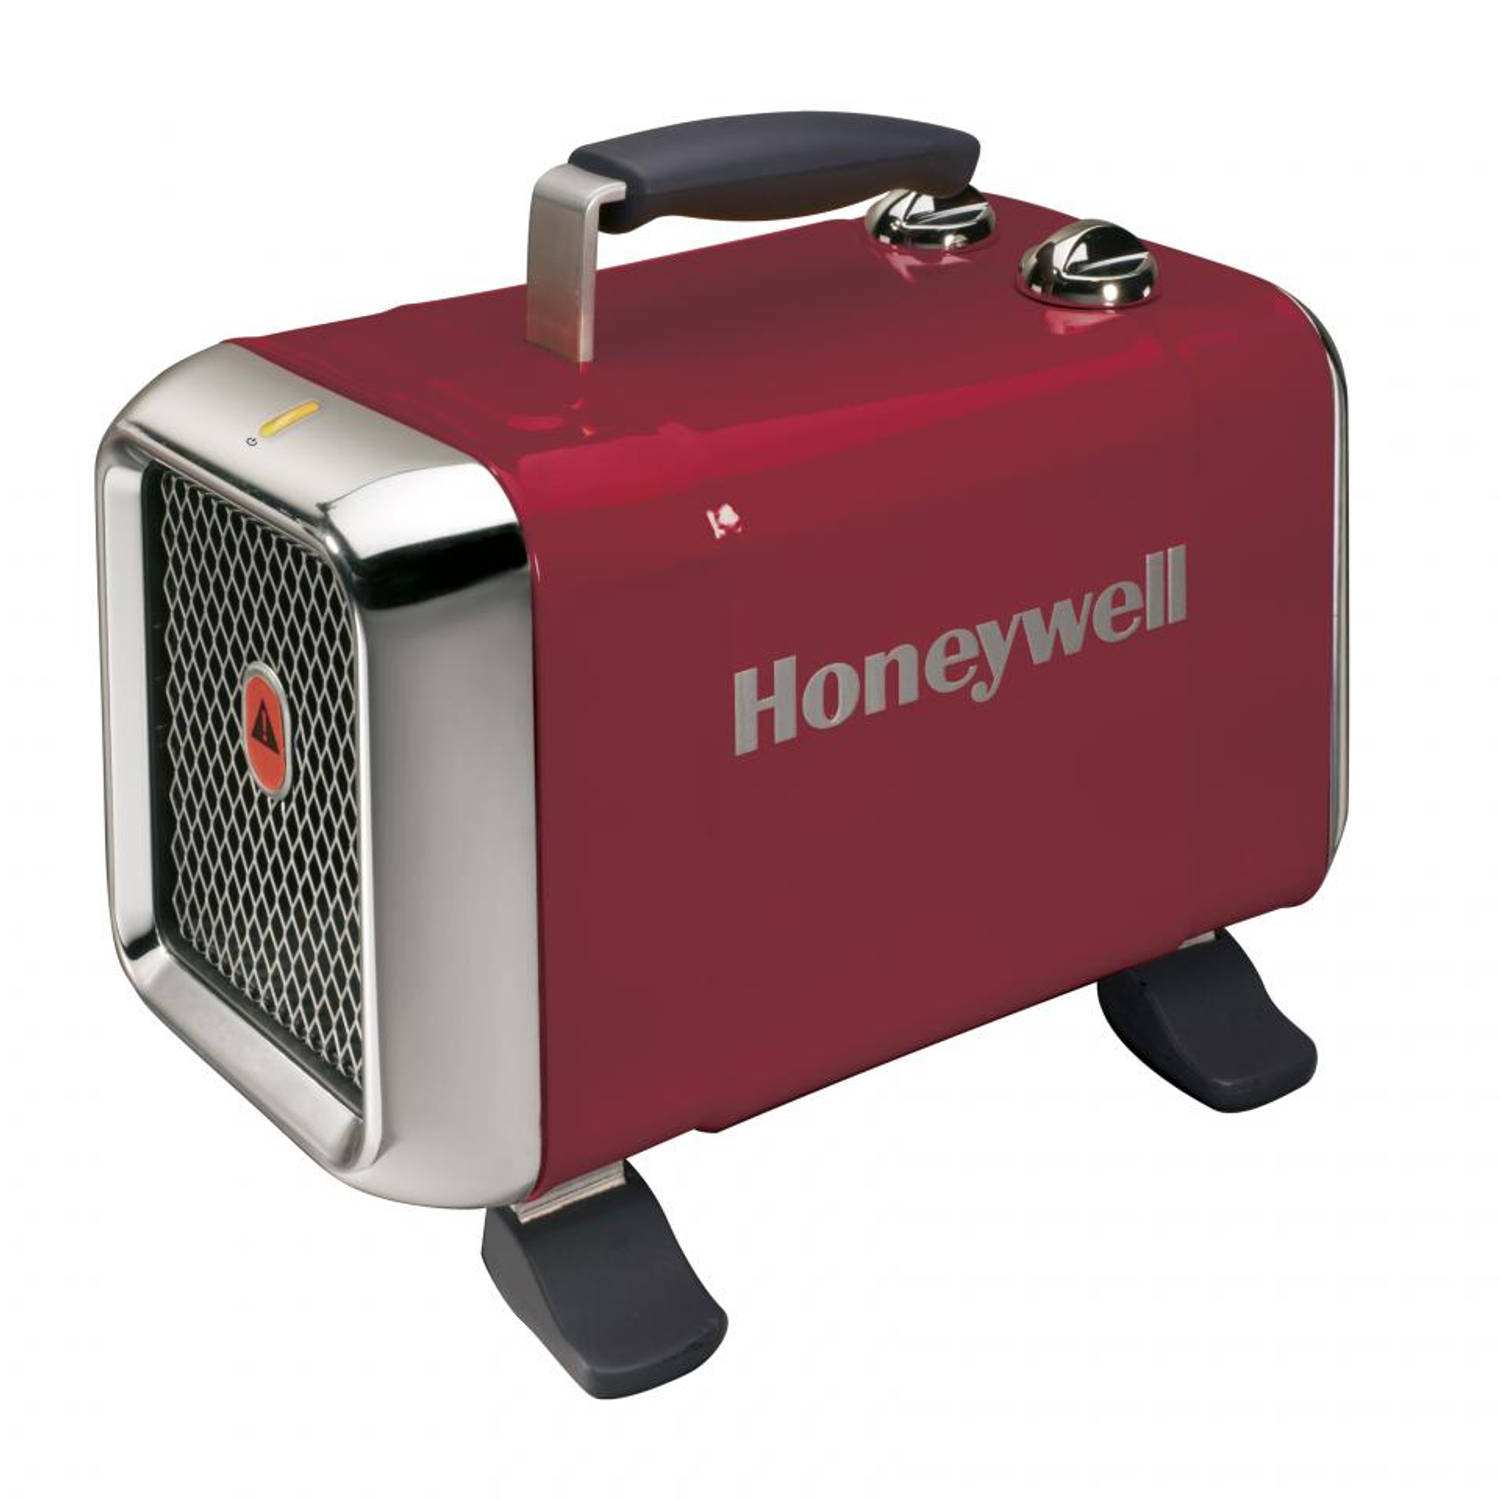 Centimeter Onbekwaamheid bedrag Honeywell keramische kachel hz-510e2 - rood | Blokker